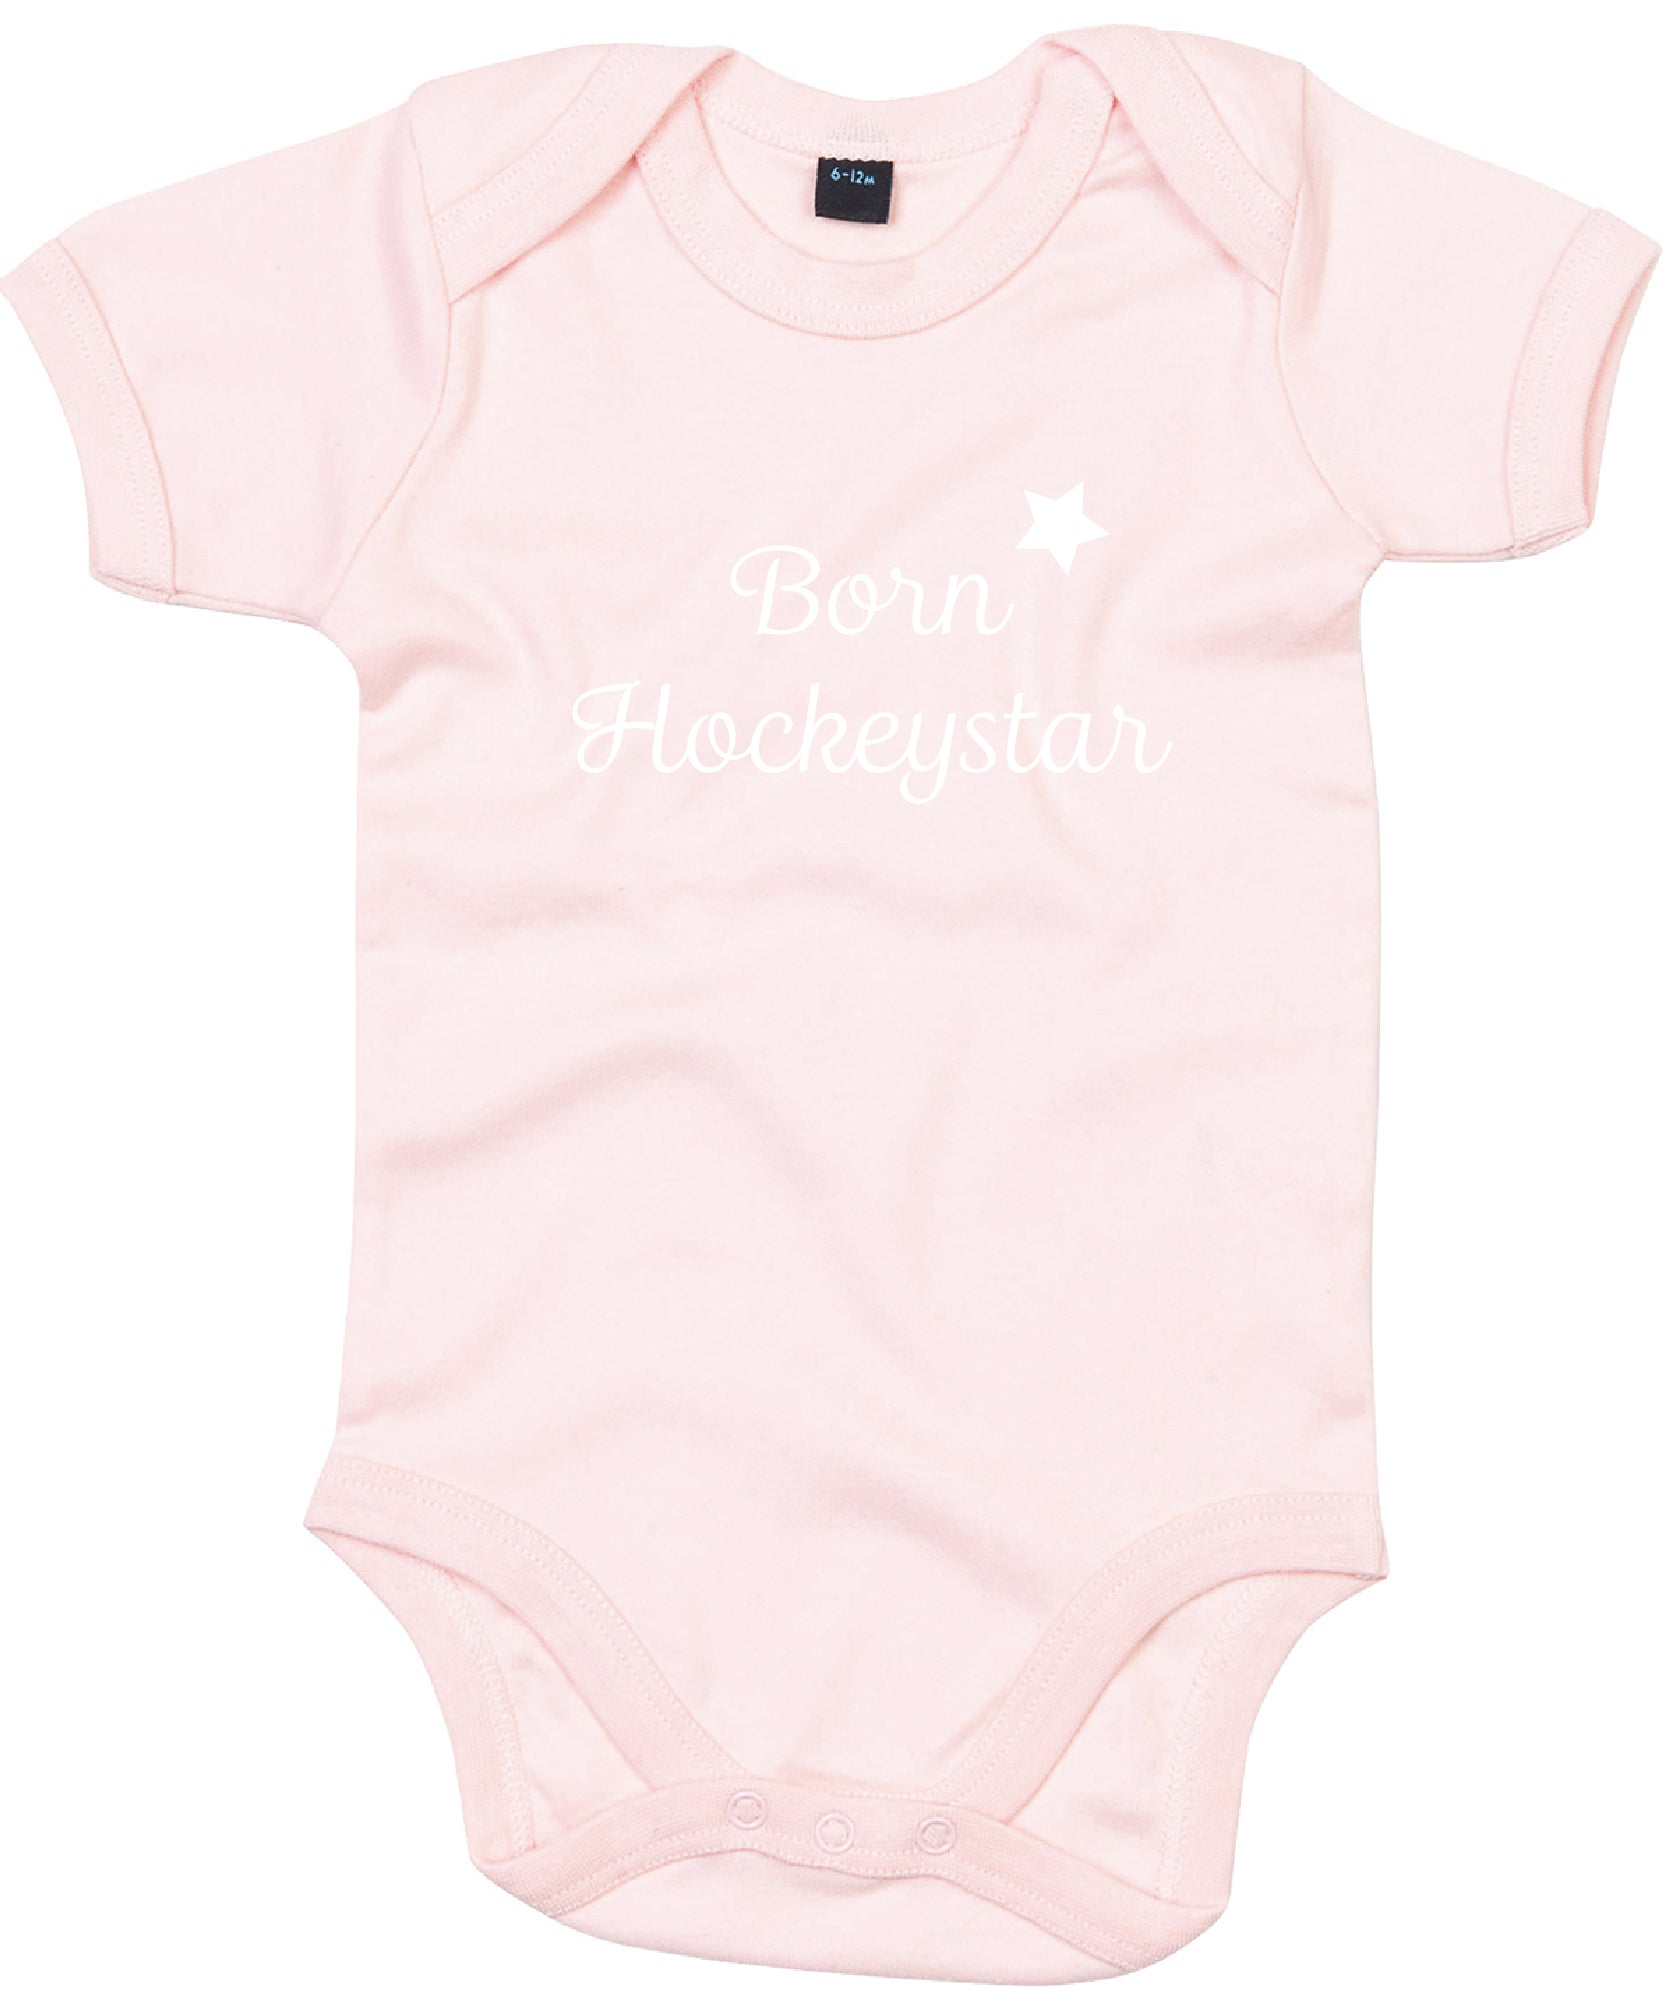 Baby Romper Hockey Born Hockeystar